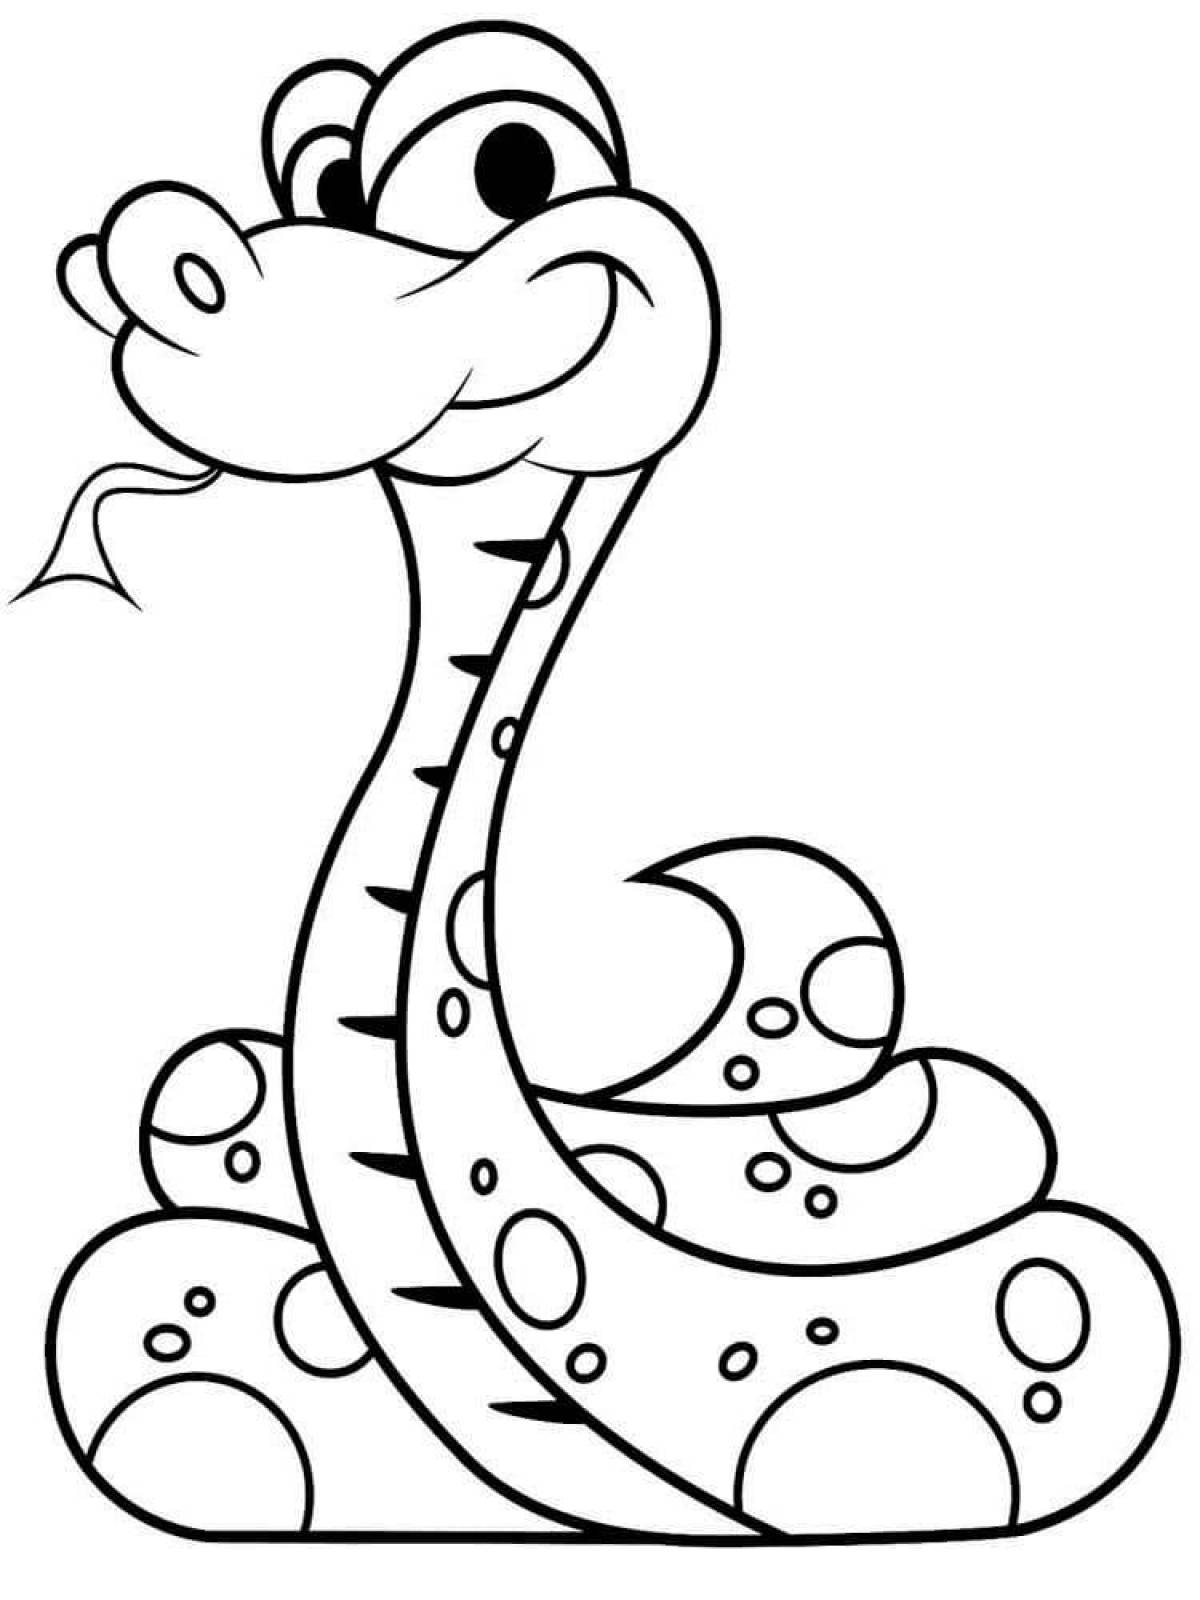 Веселая раскраска змей для детей